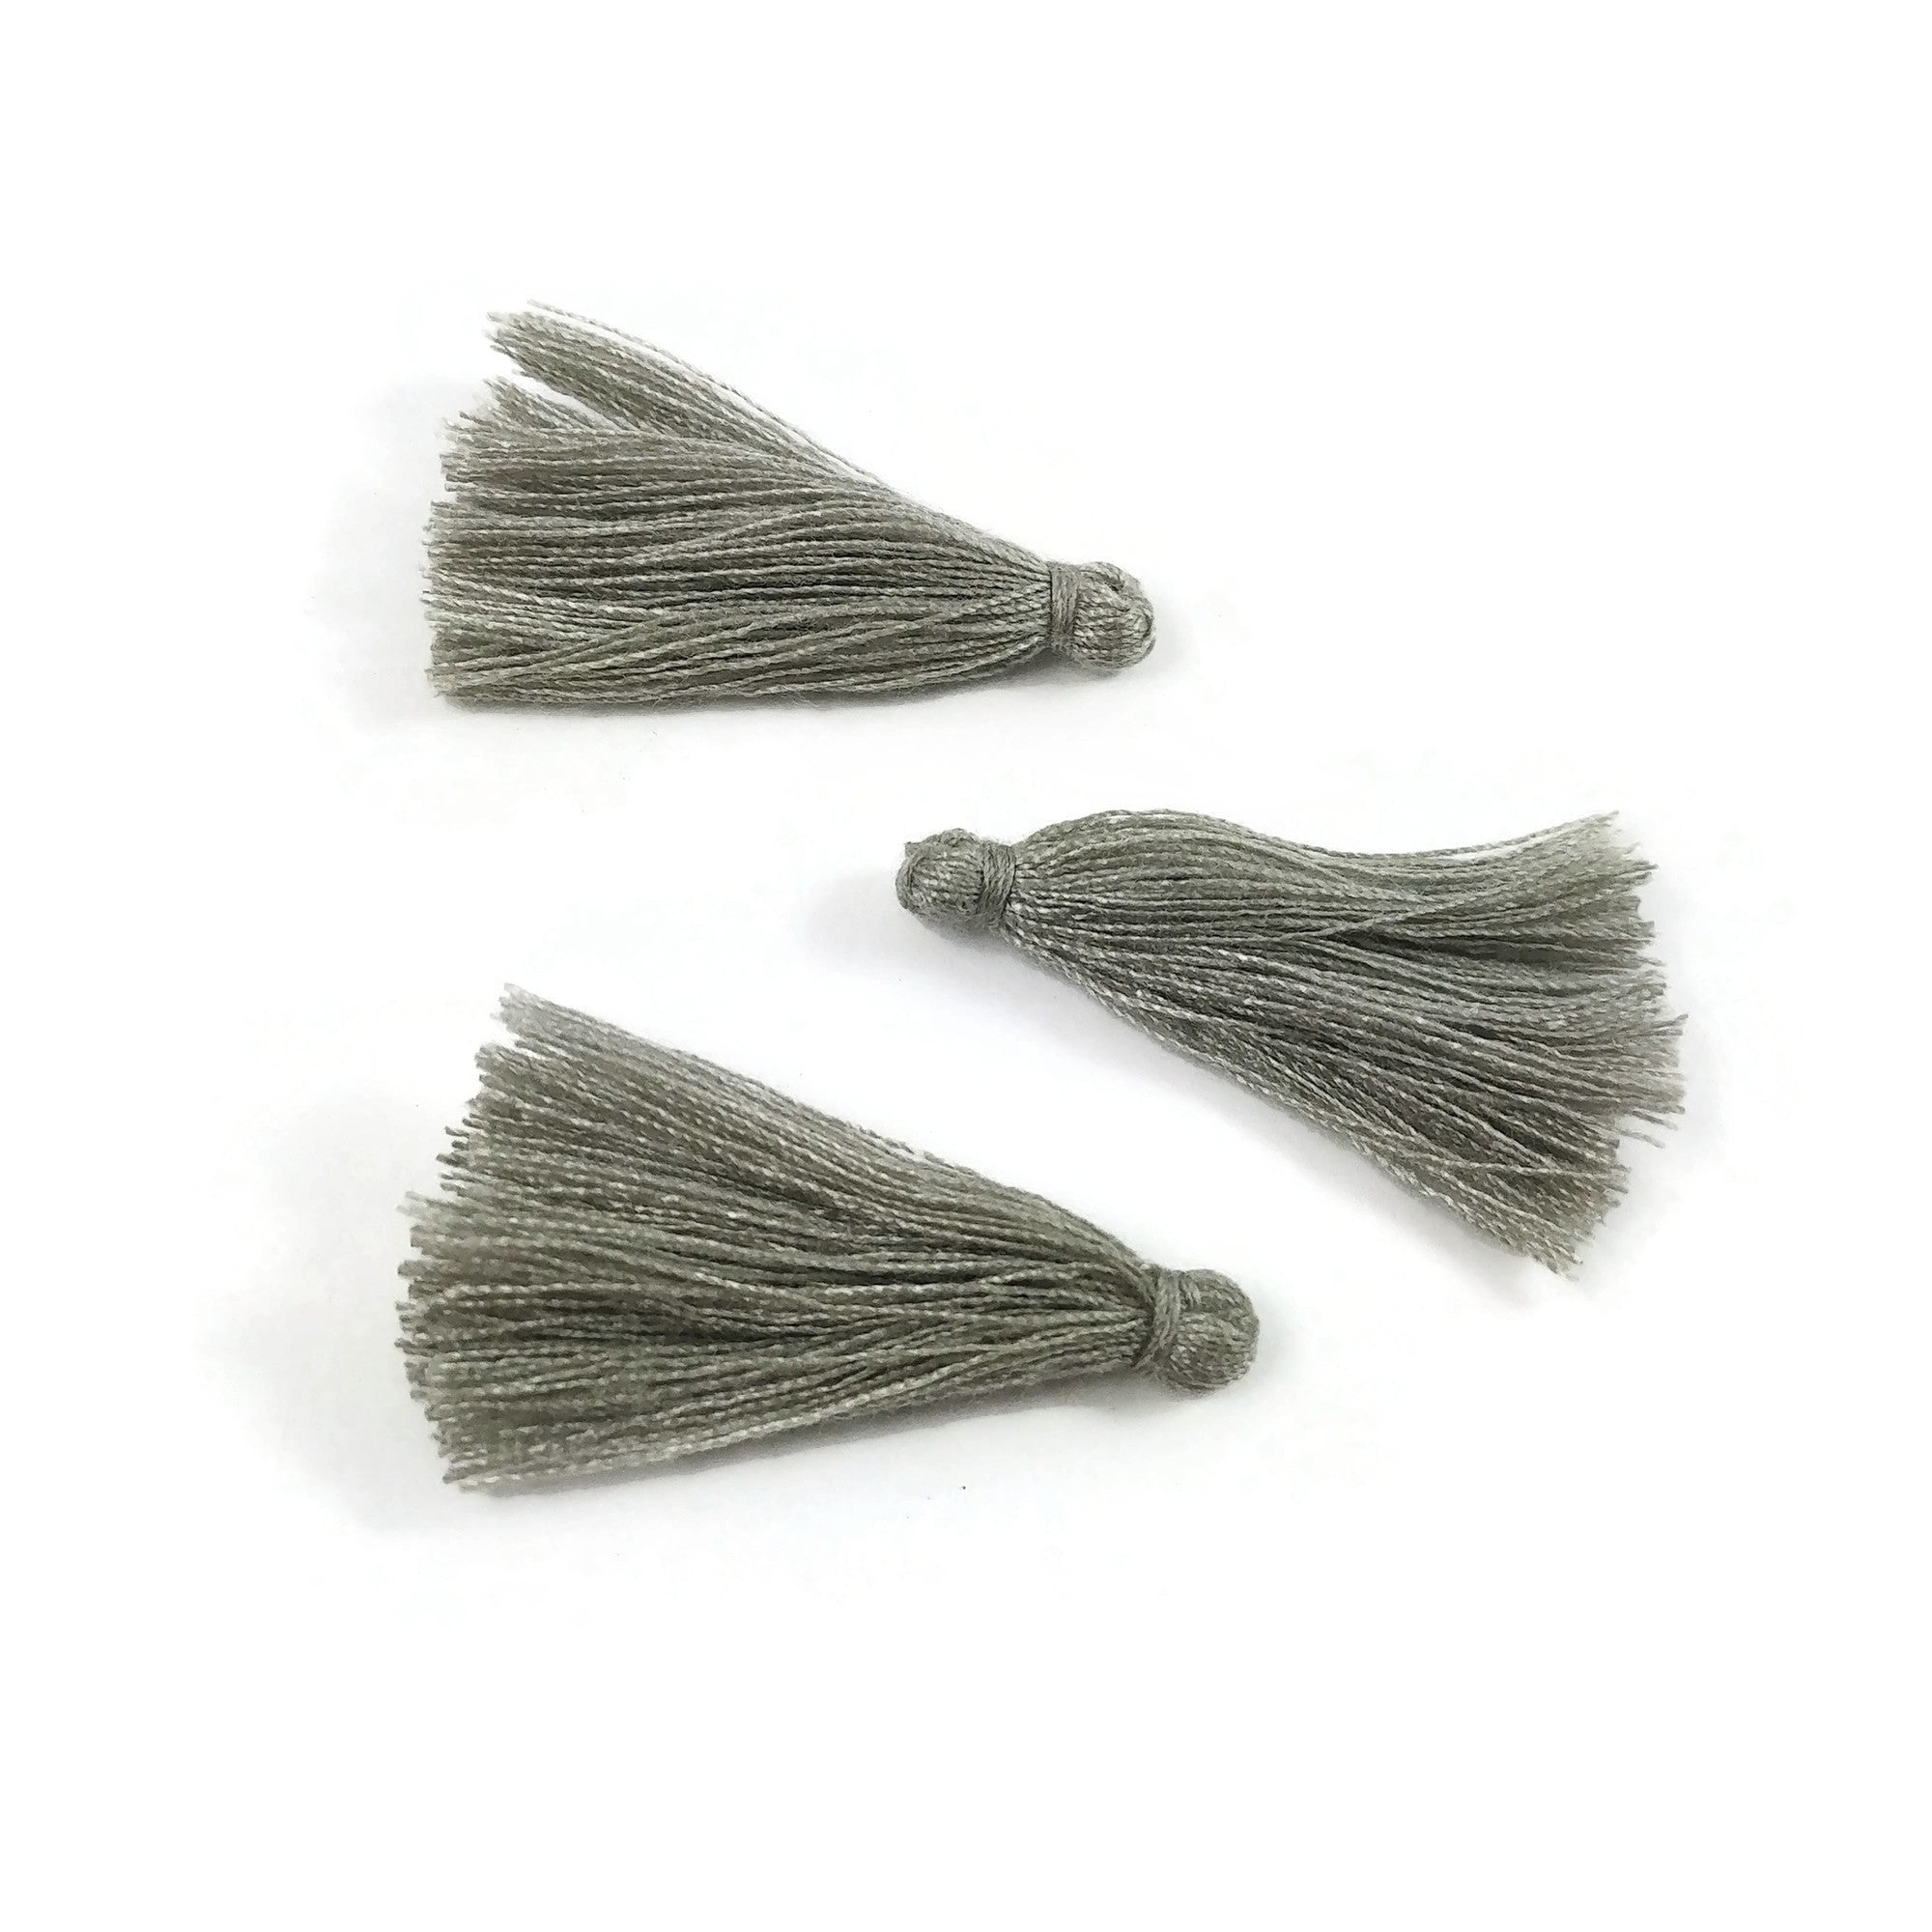 10 Boho Cotton Tassel 25-30mm long - Choose your colors